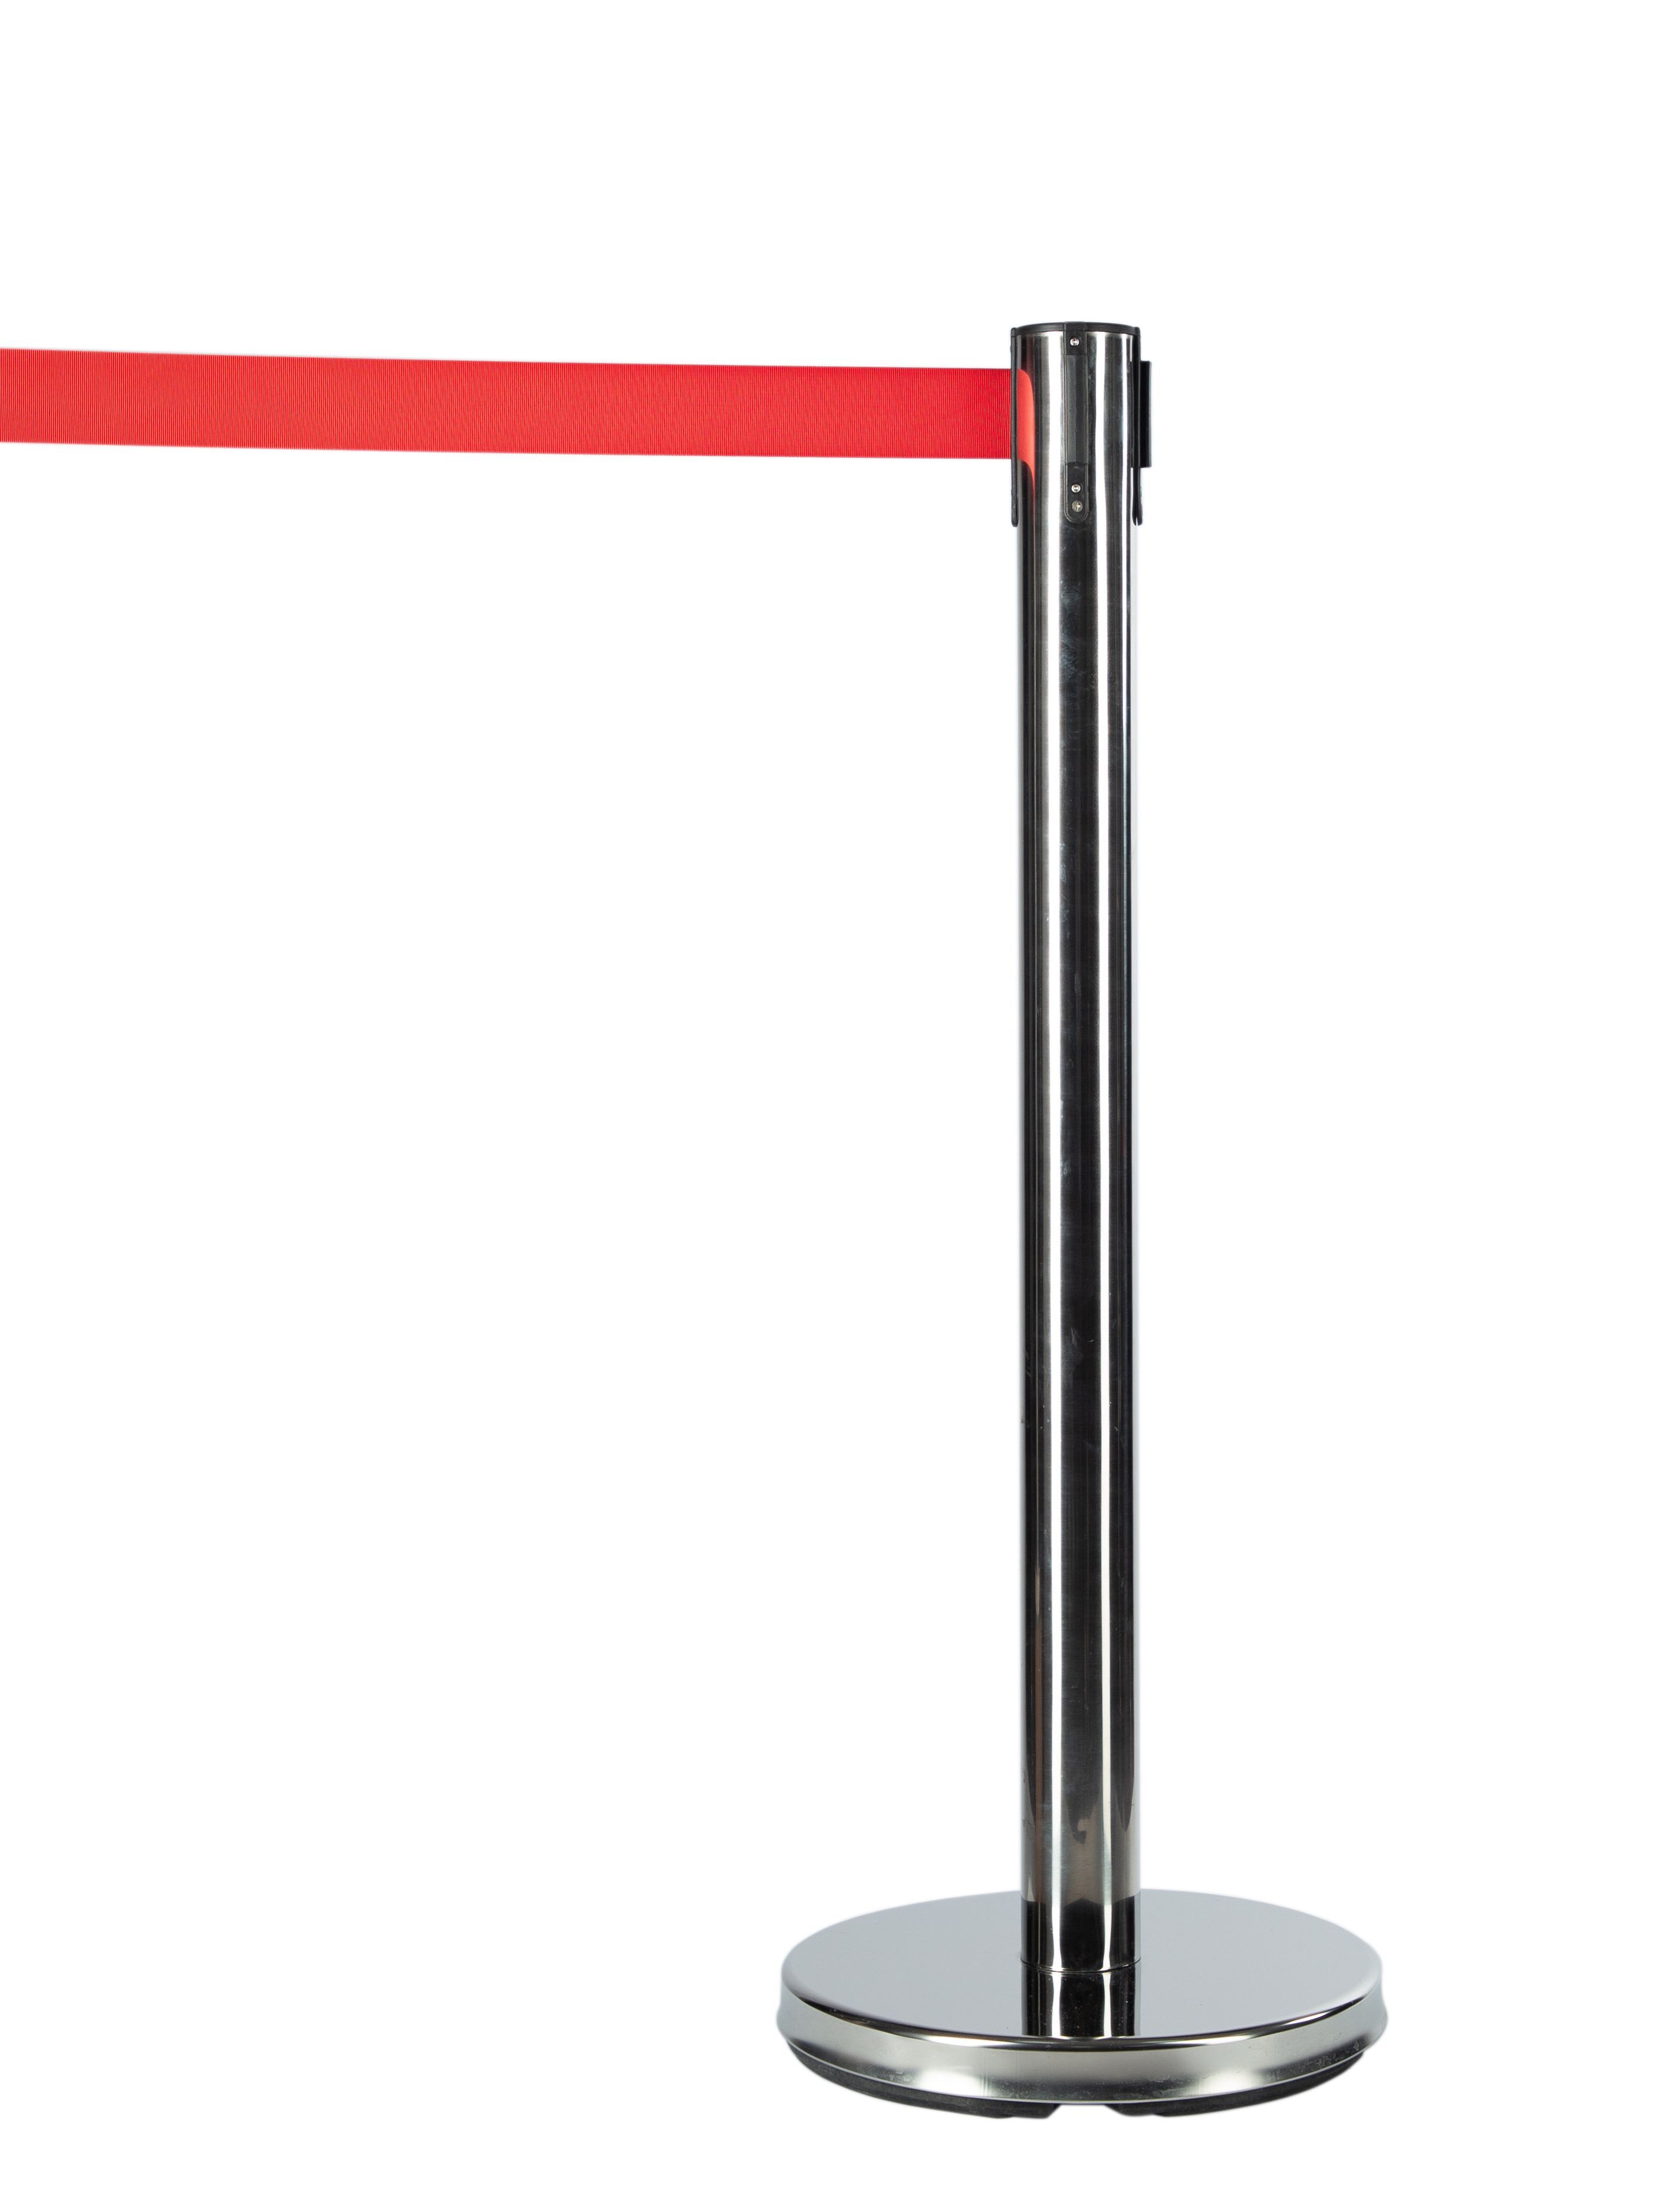 мобильная стойка с красной лентой 5 метров ип кузин р с Мобильная стойка с красной лентой 5 метров ИП Кузин Р.С.